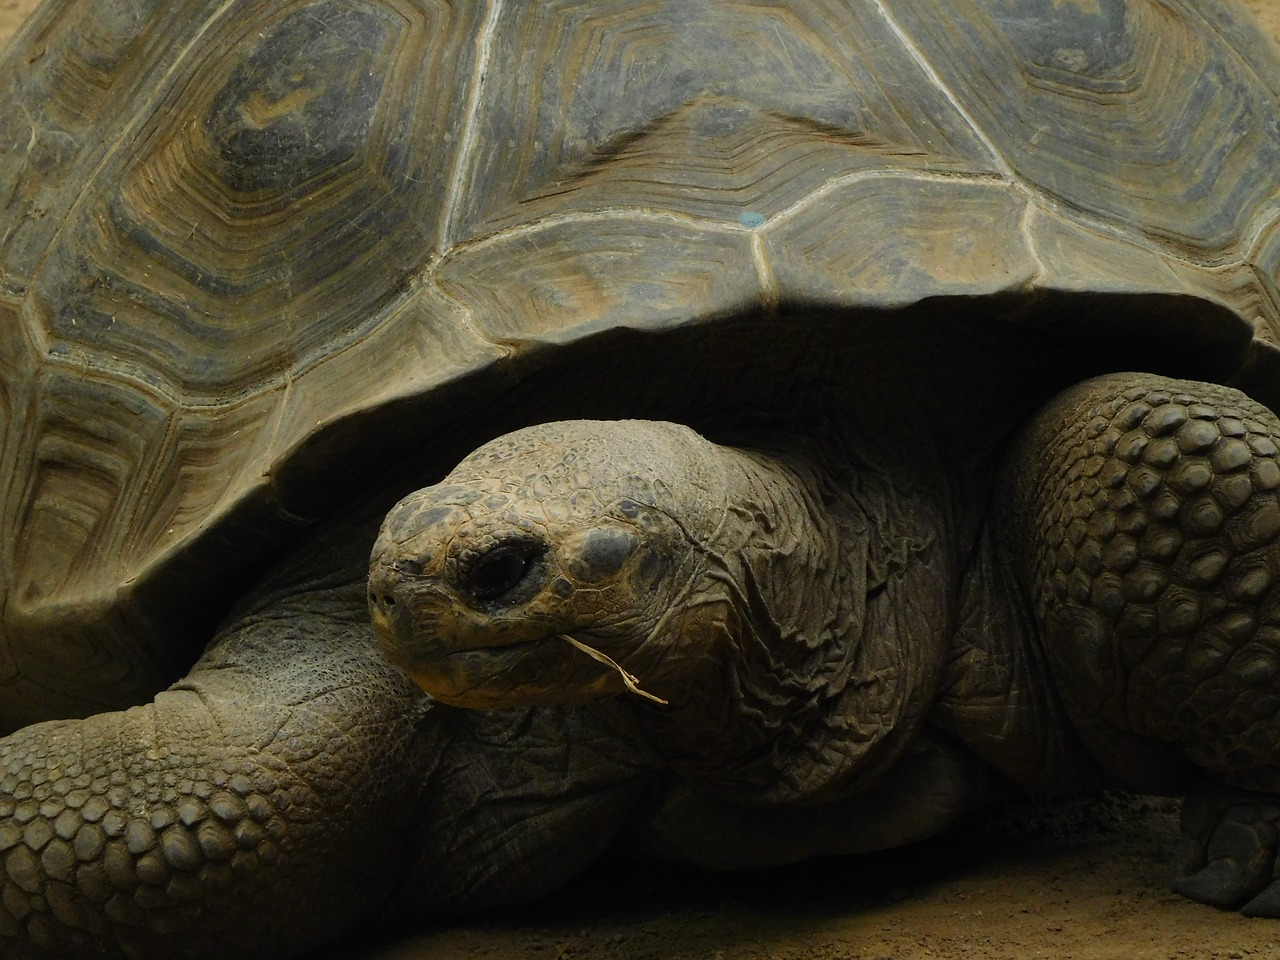 galapagos giant tortoise  turtle  galapagos free photo